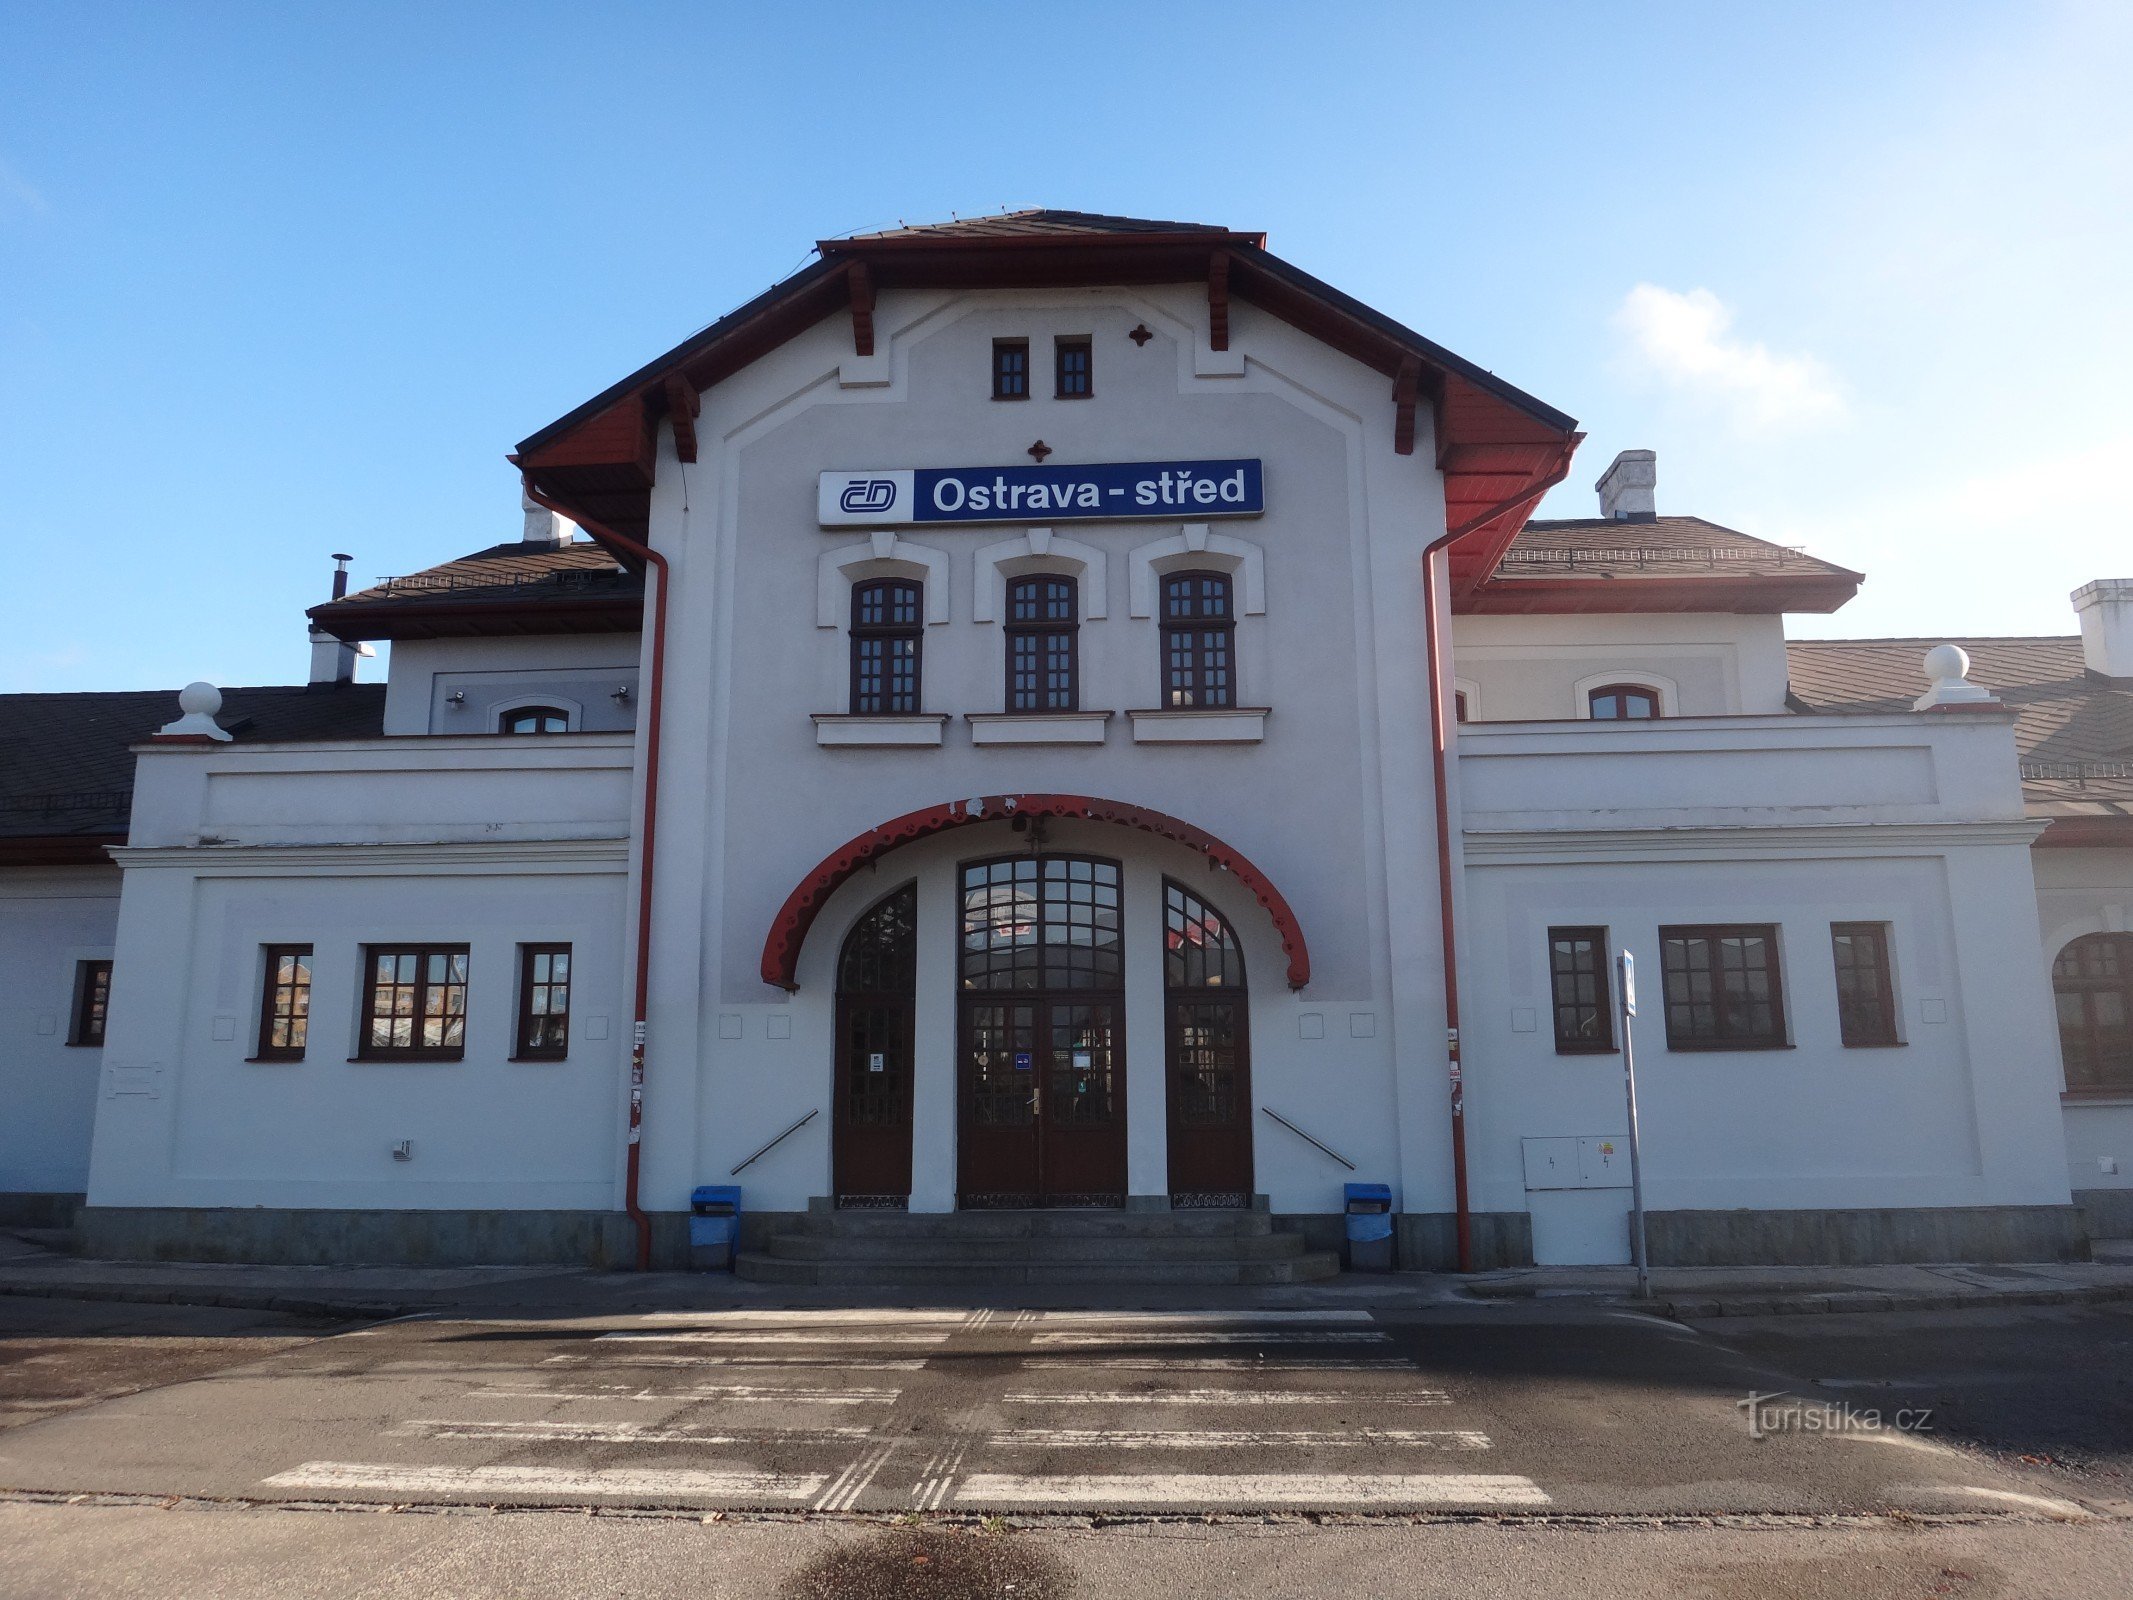 το κτίριο του σιδηροδρομικού σταθμού Ostrava-střed και το σιδηροδρομικό μουσείο